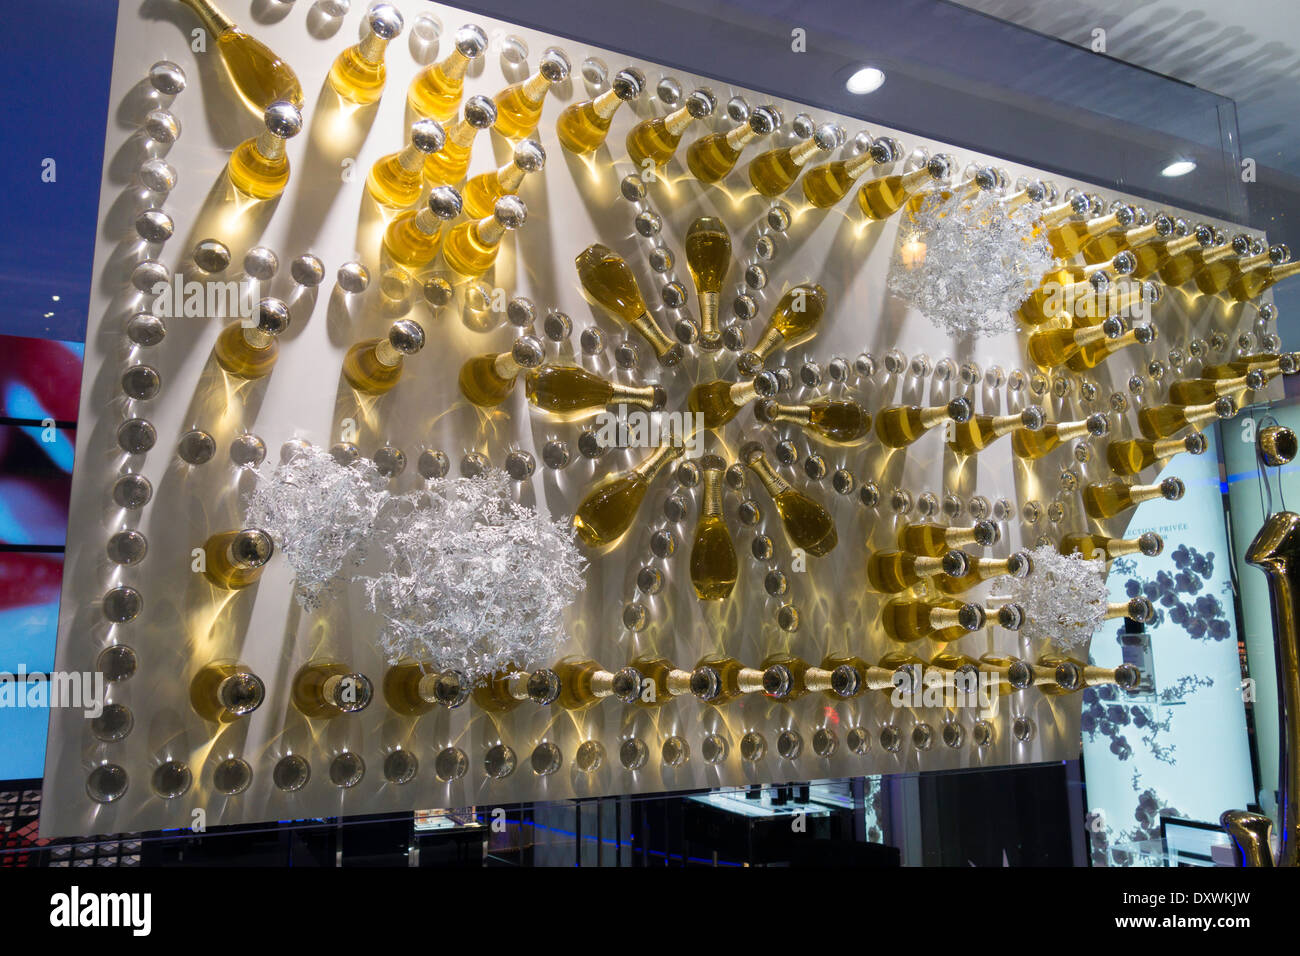 Flaschen von j ' adore Parfum dekorieren die Dior Boutique auf der Rue St.  Honore, Paris, Frankreich Stockfotografie - Alamy